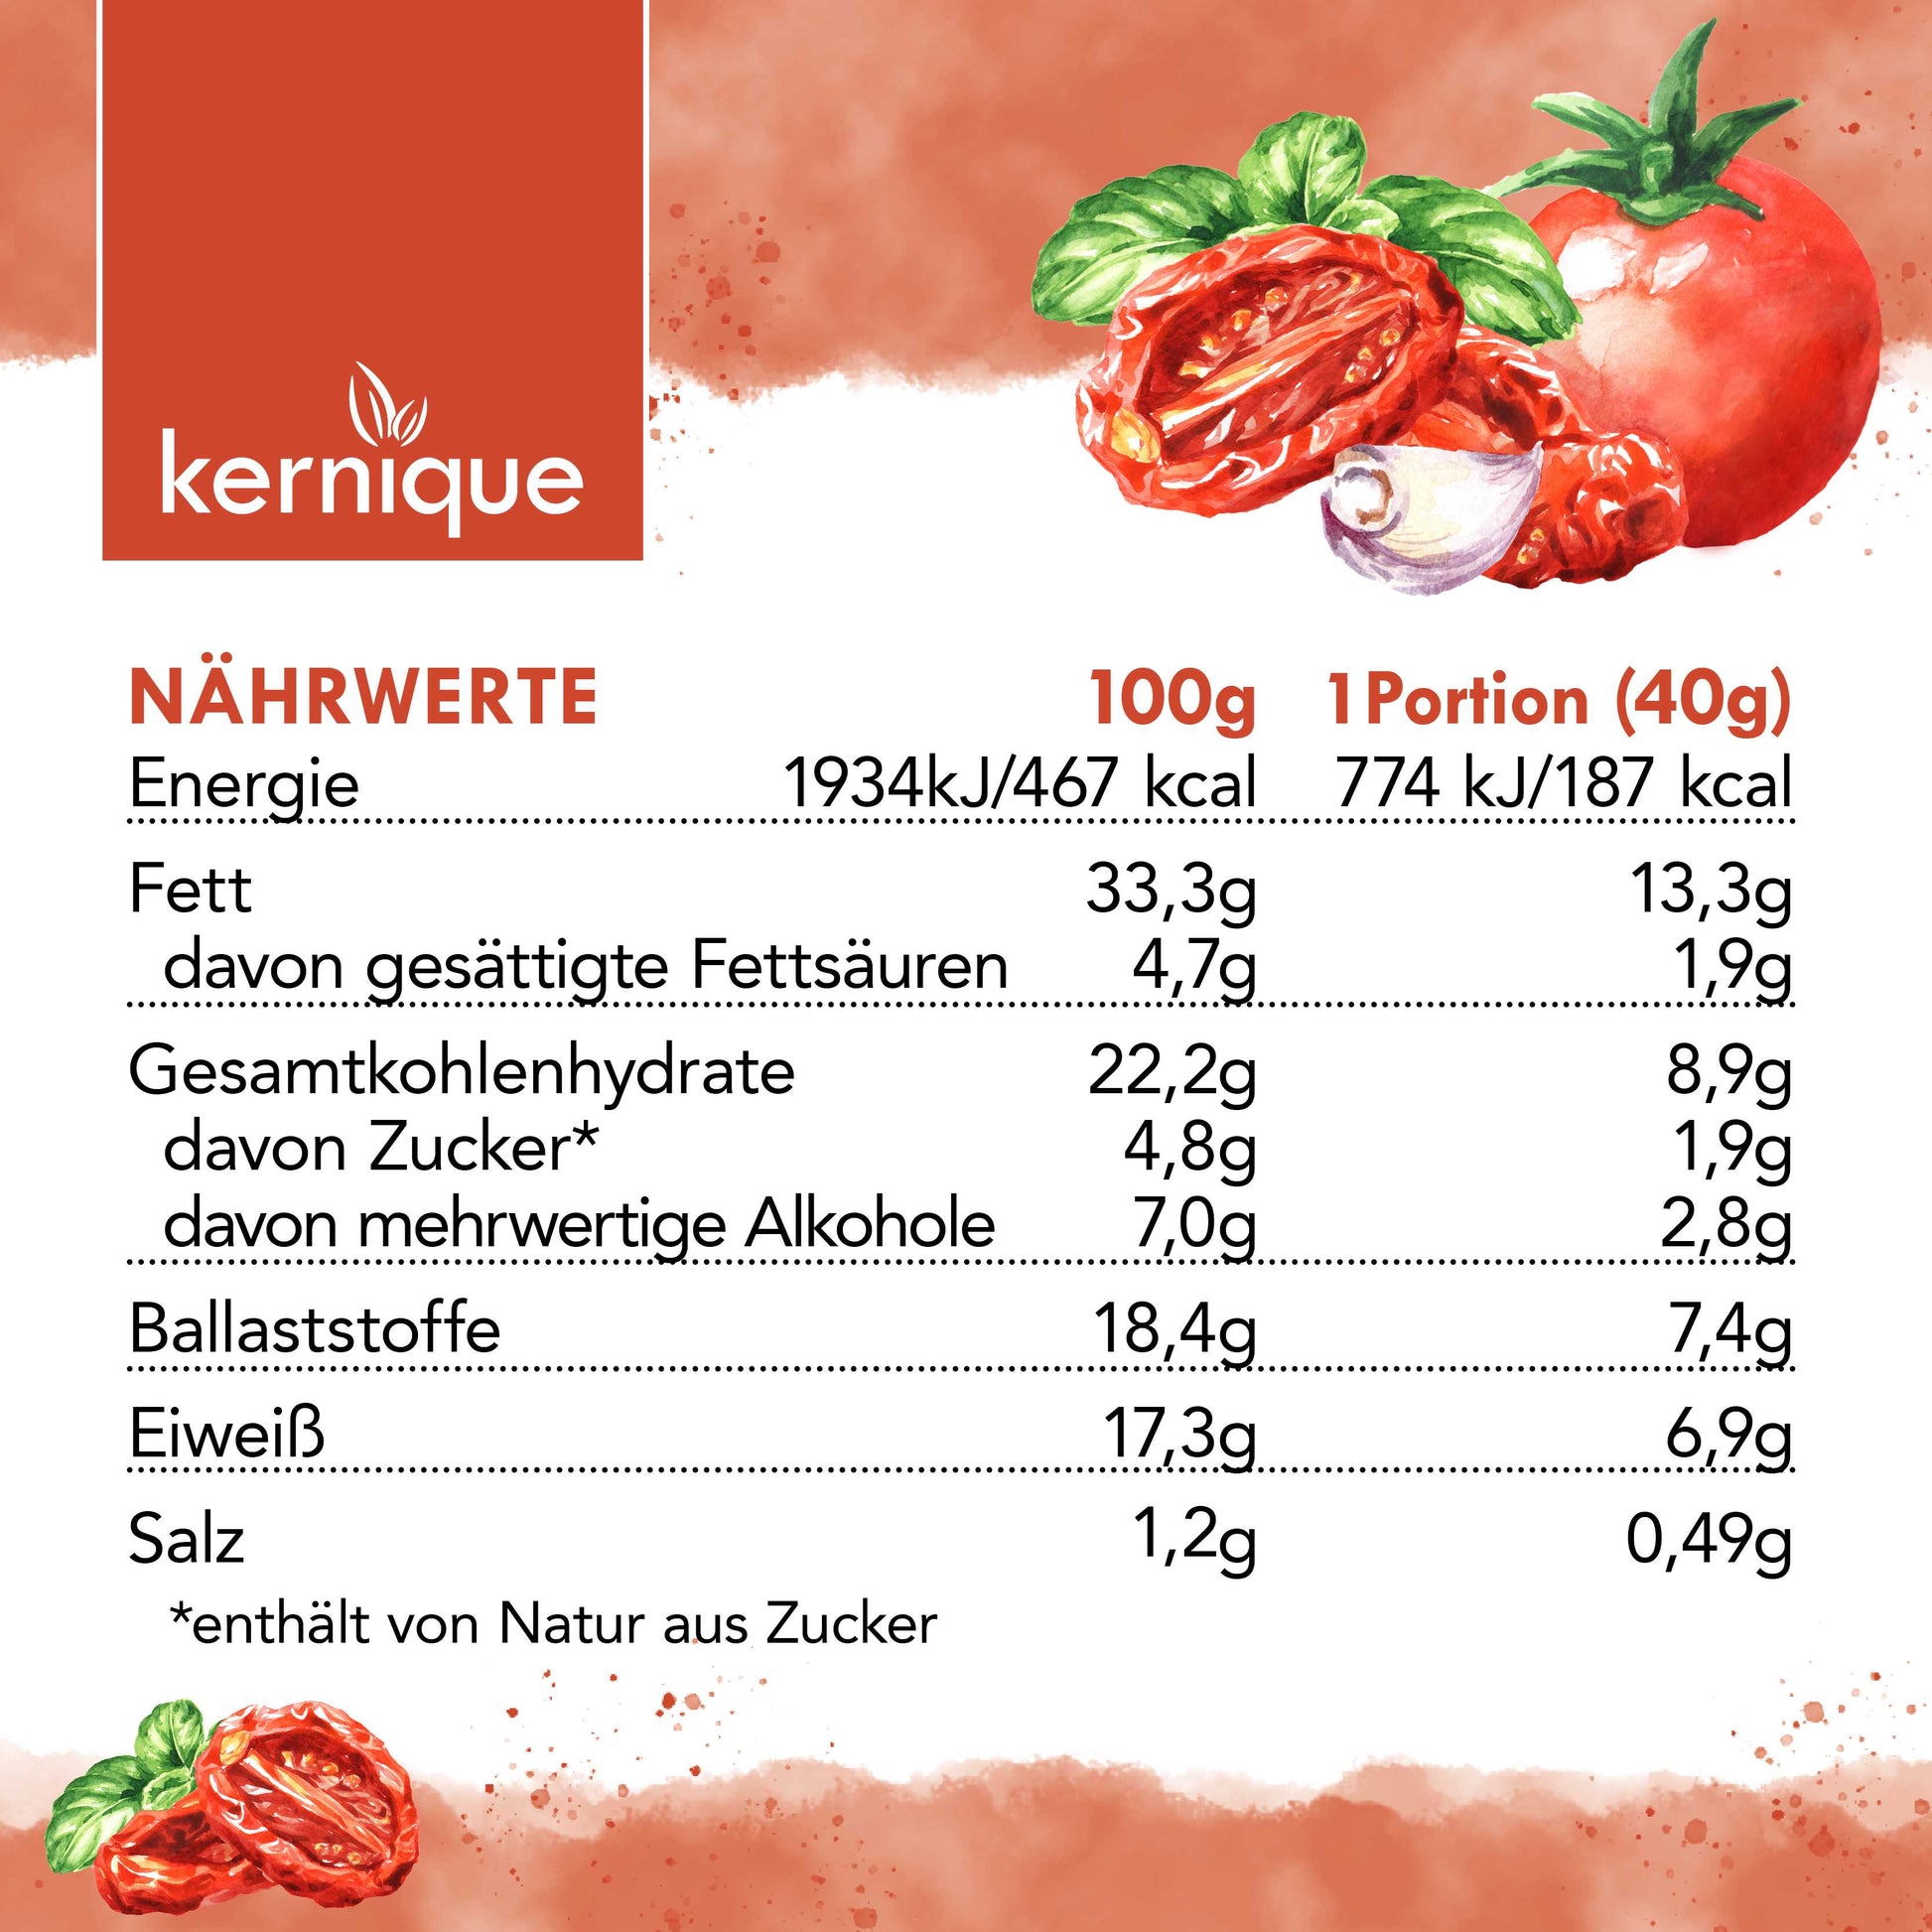 kernique kein riegel - salty sweet tomato (8+1 gratis) kernique.de